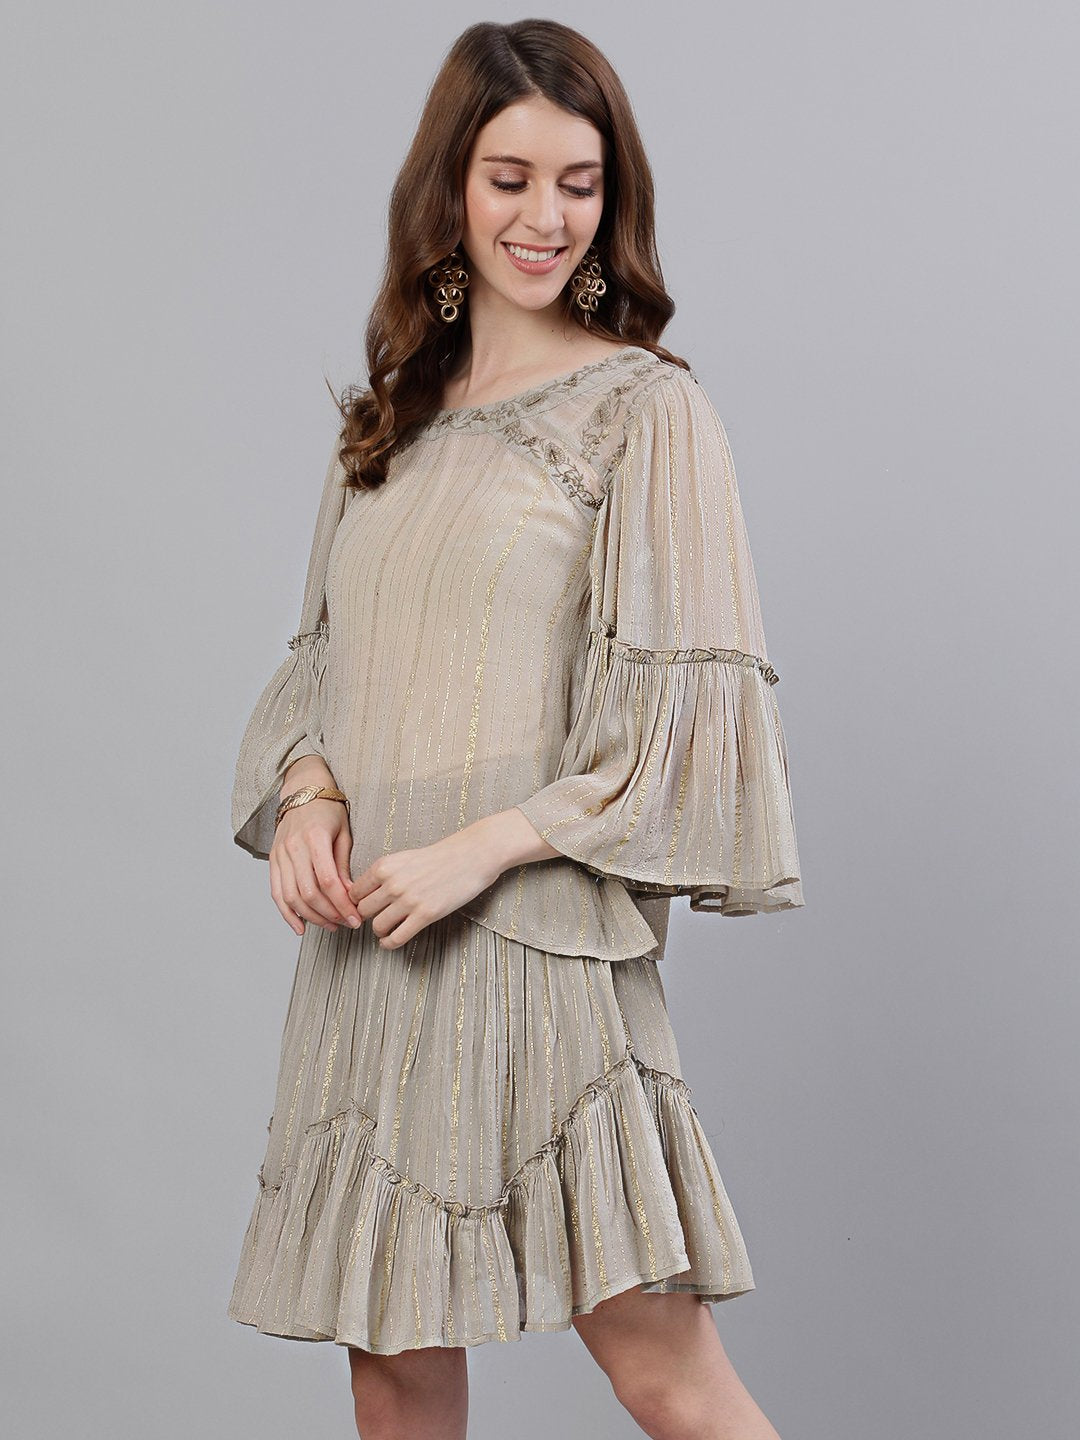 Ishin Women's Georgette Beige Lurex Embroidered Two Piece Dress